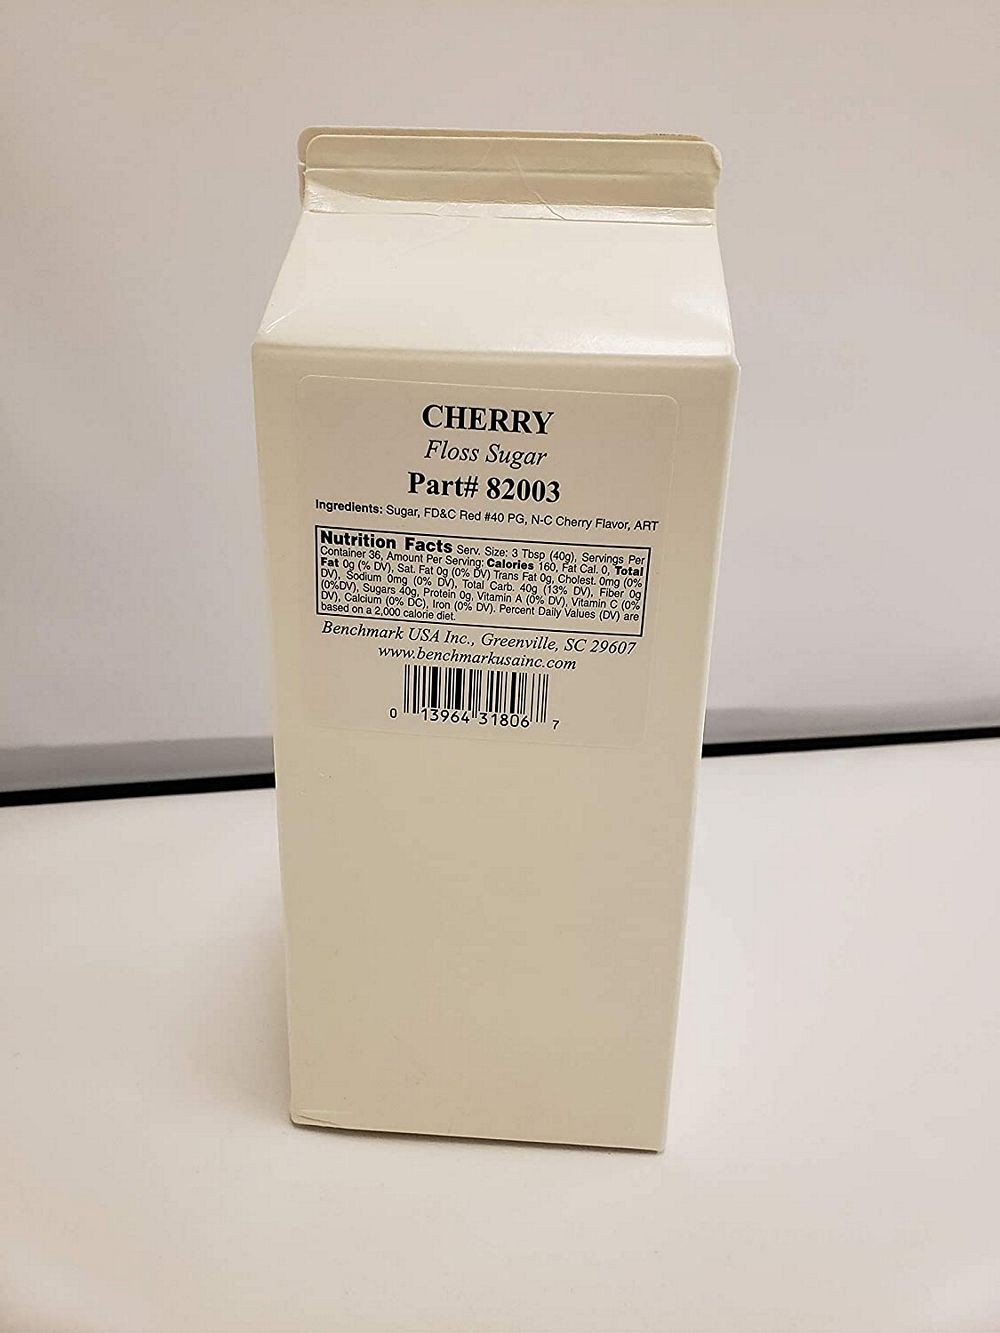 Winco 82003 Benchmark USA Cotton Candy Floss, Cherry Flavor, 3.25 Lb.